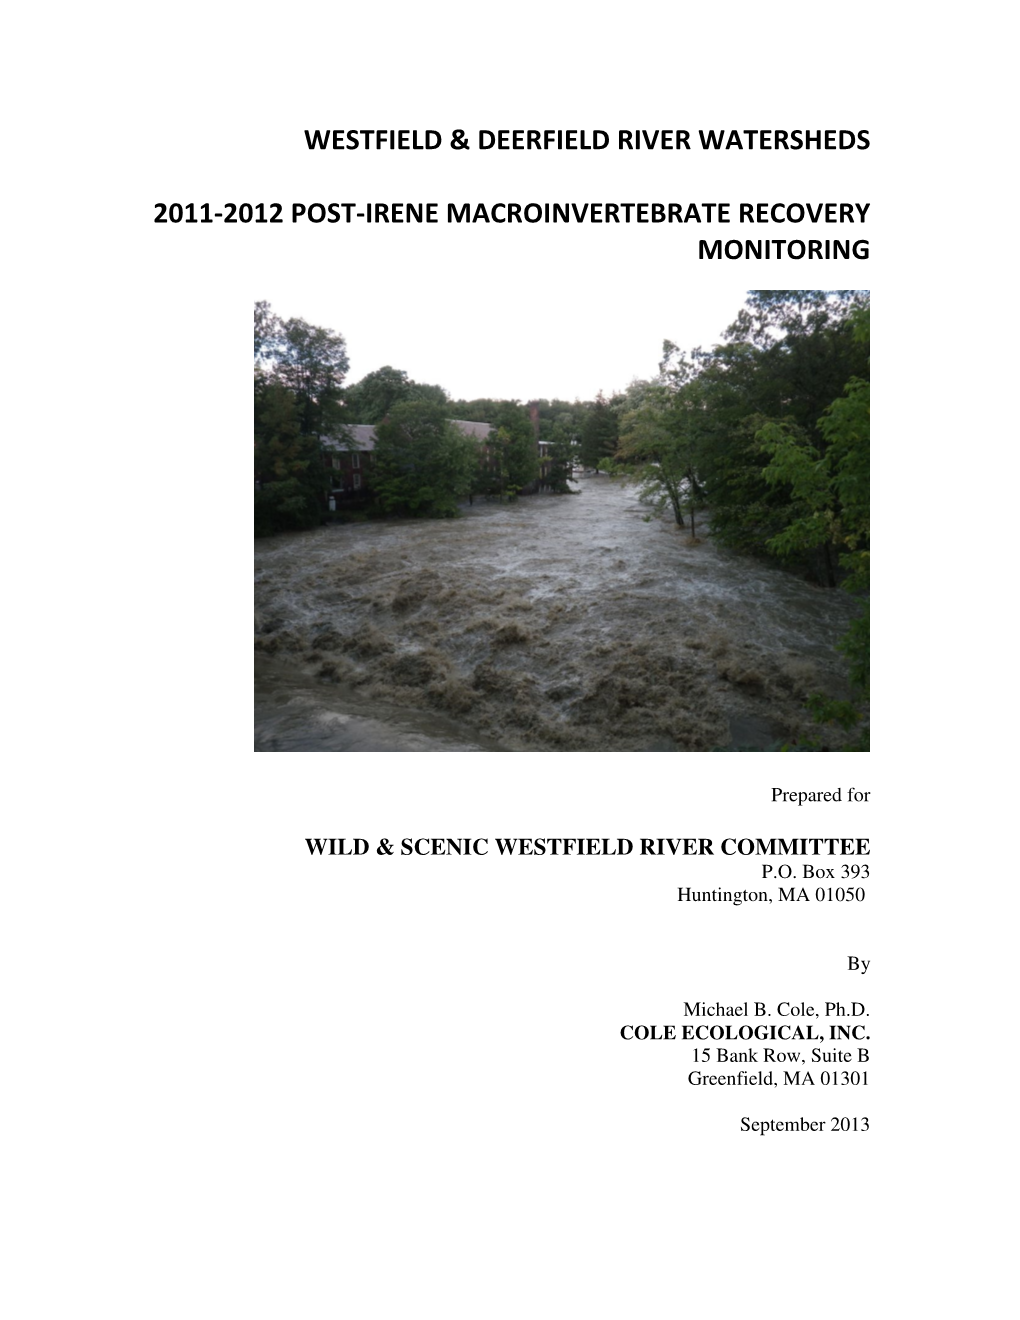 Westfield & Deerfield River Watersheds 2011-2012 Post